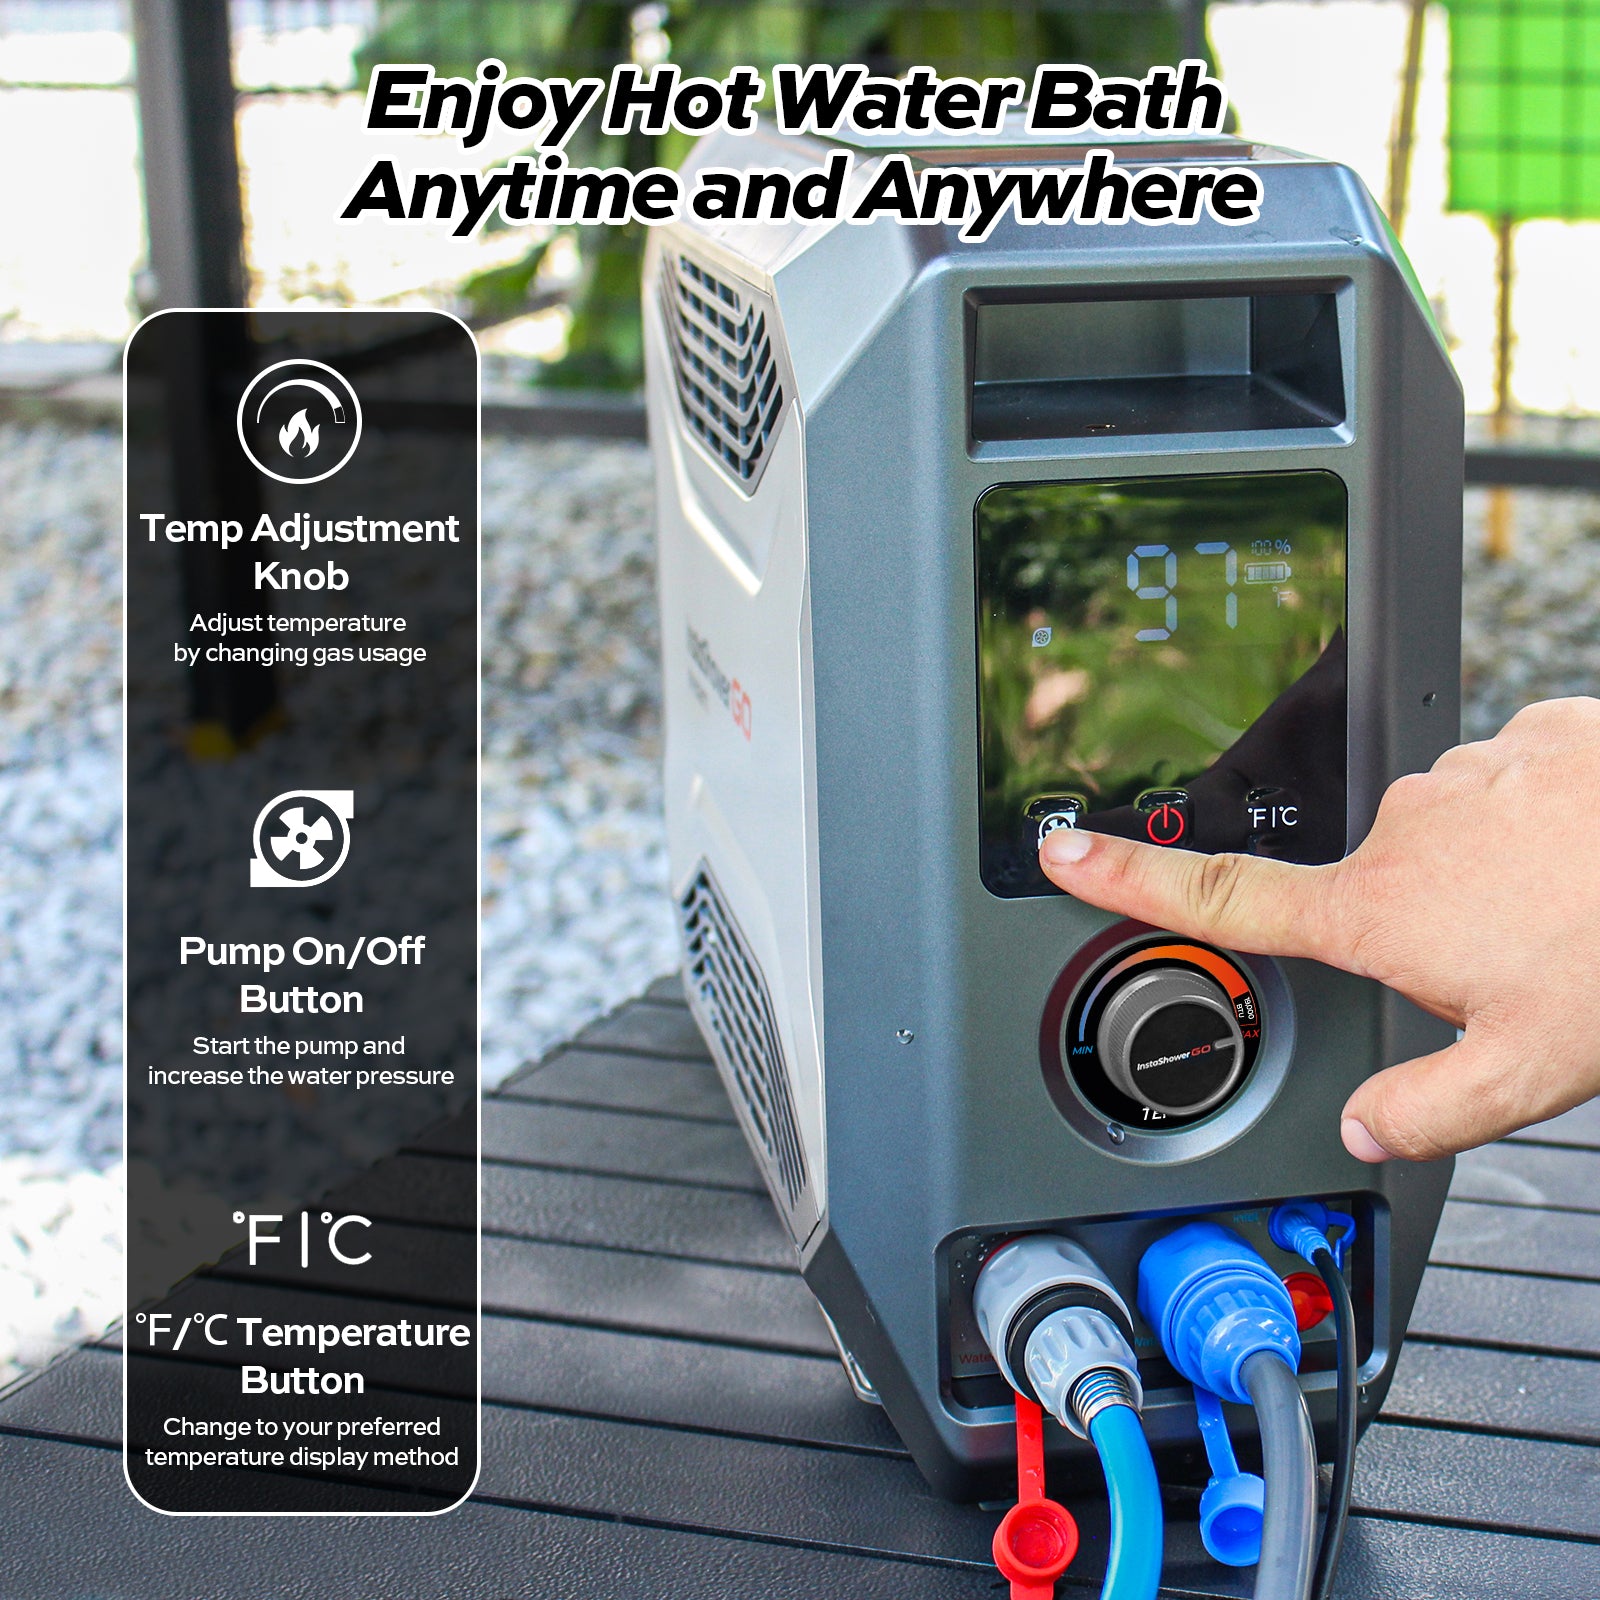 Fogatti InstaShower GO Outdoor Portable water heater,19000BTU